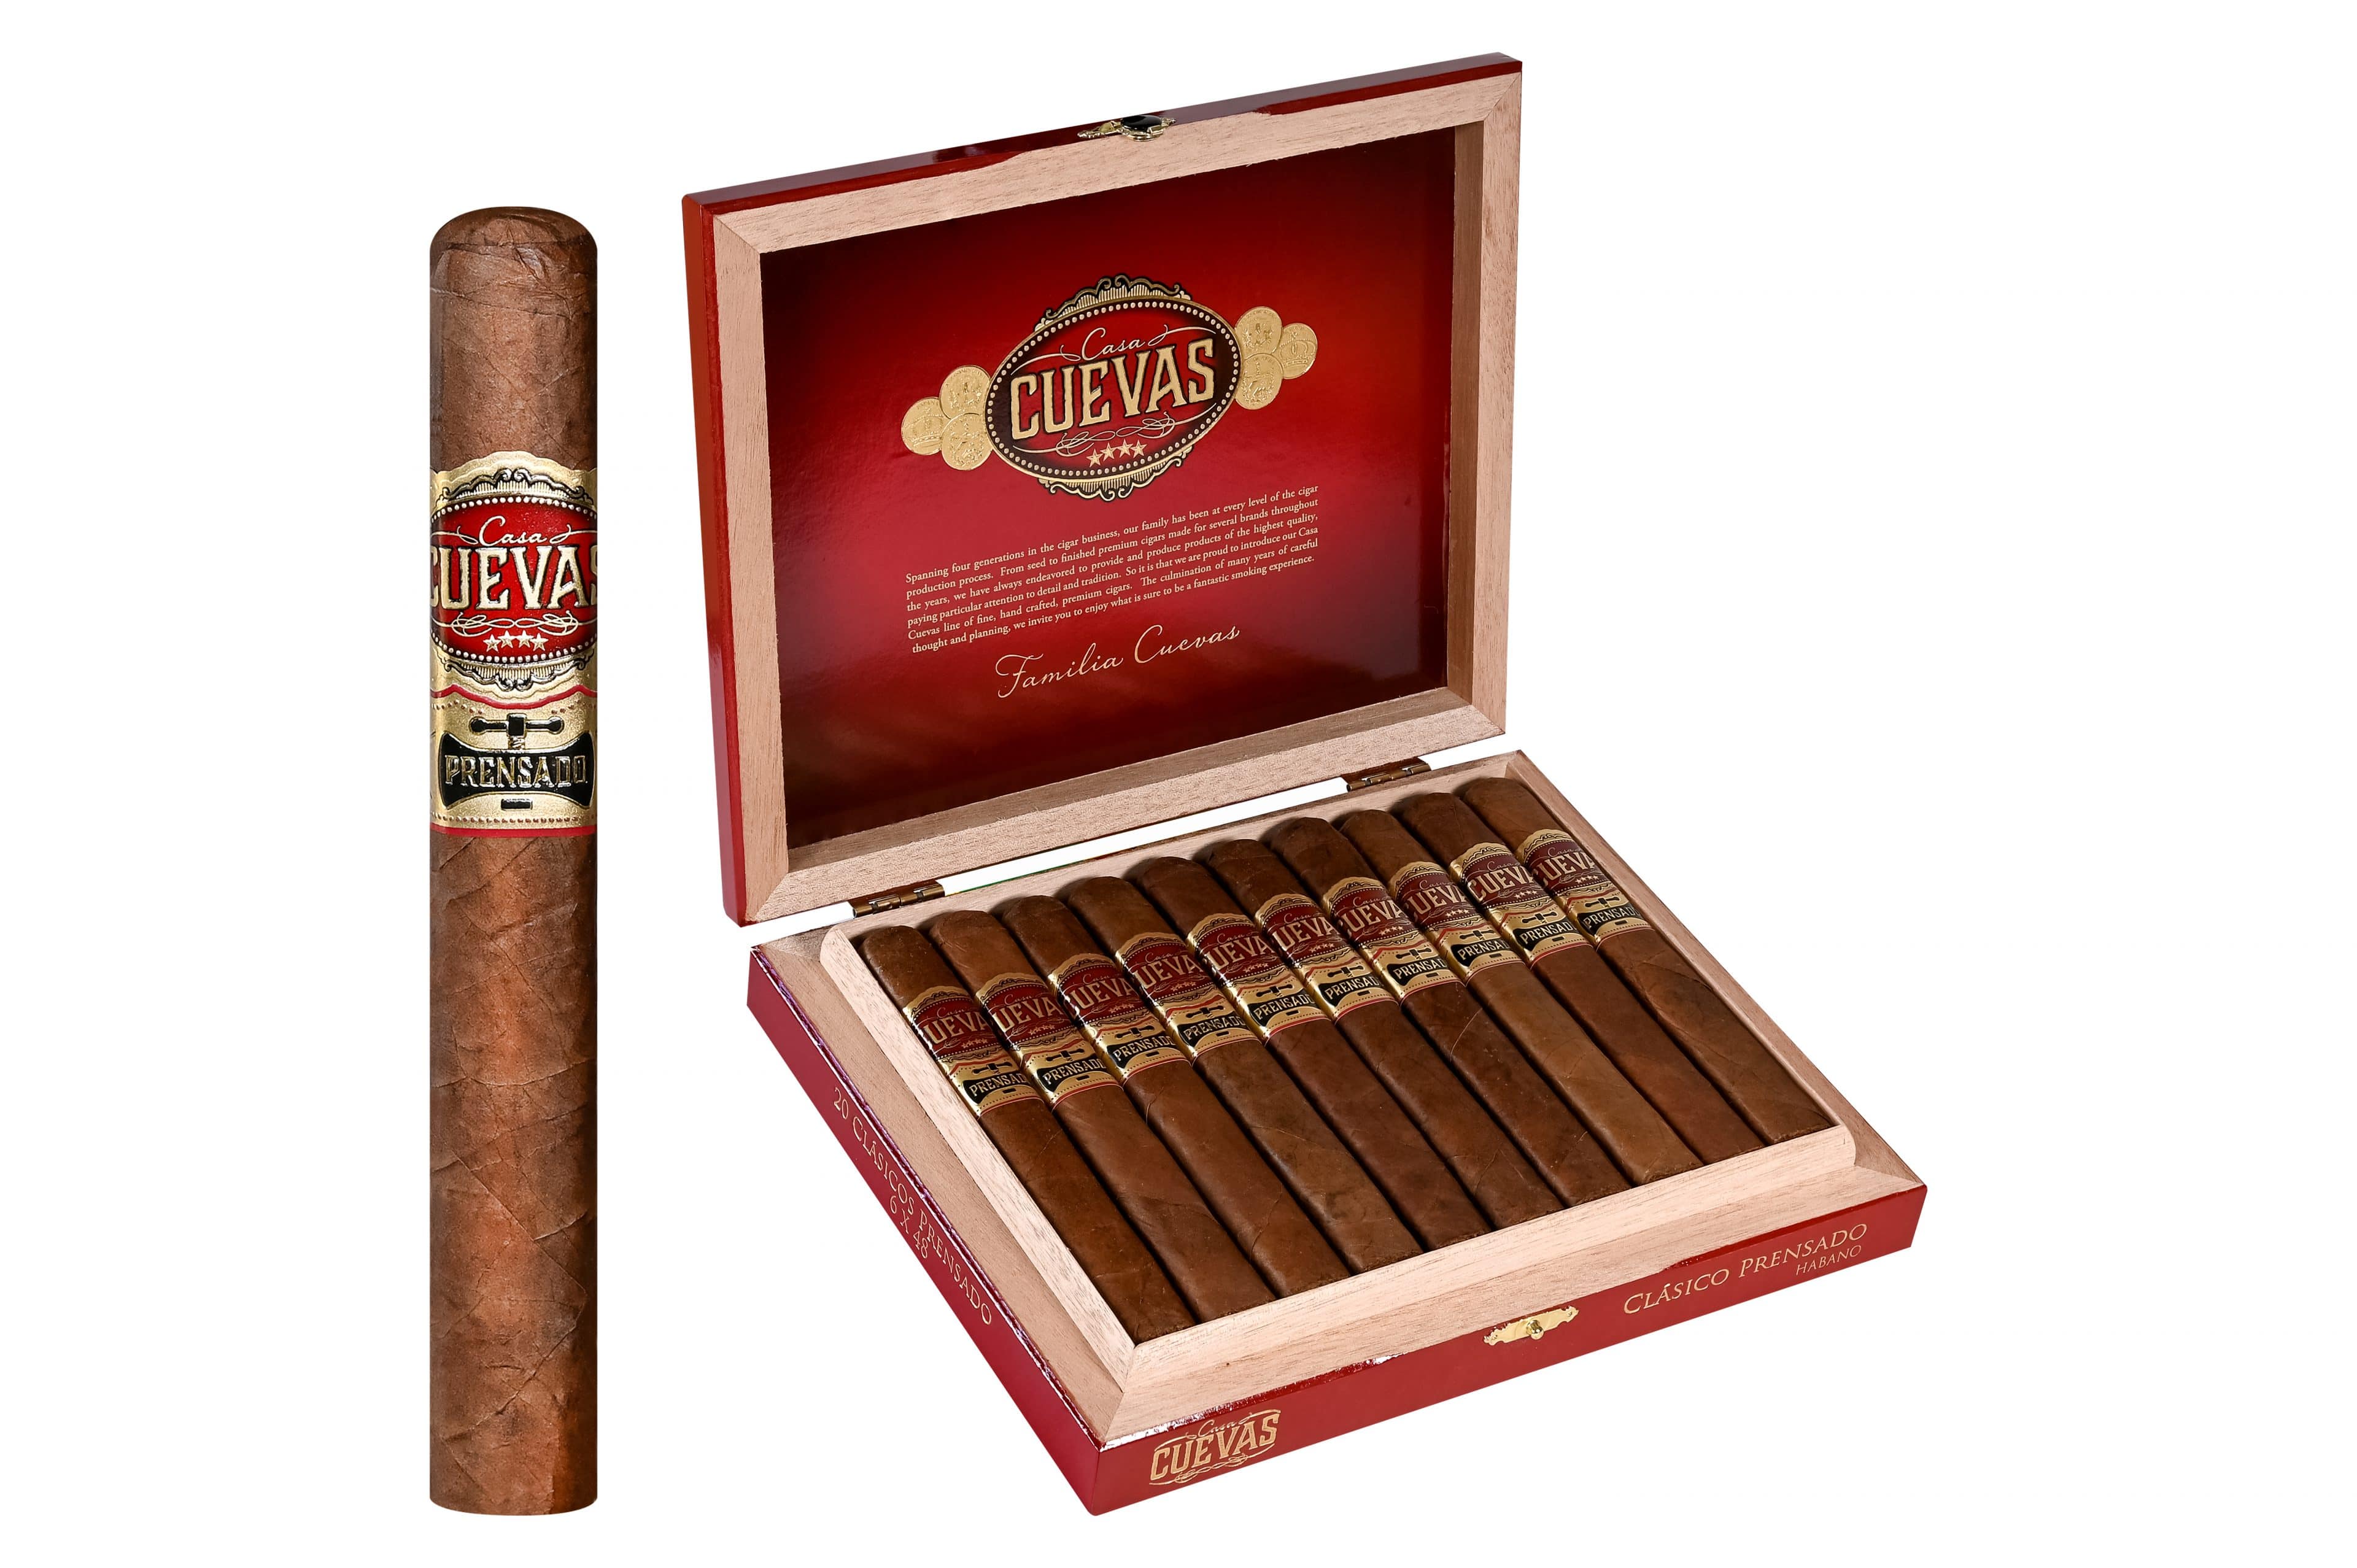 Casa Cuevas Gives Prensado a New Look - Cigar News